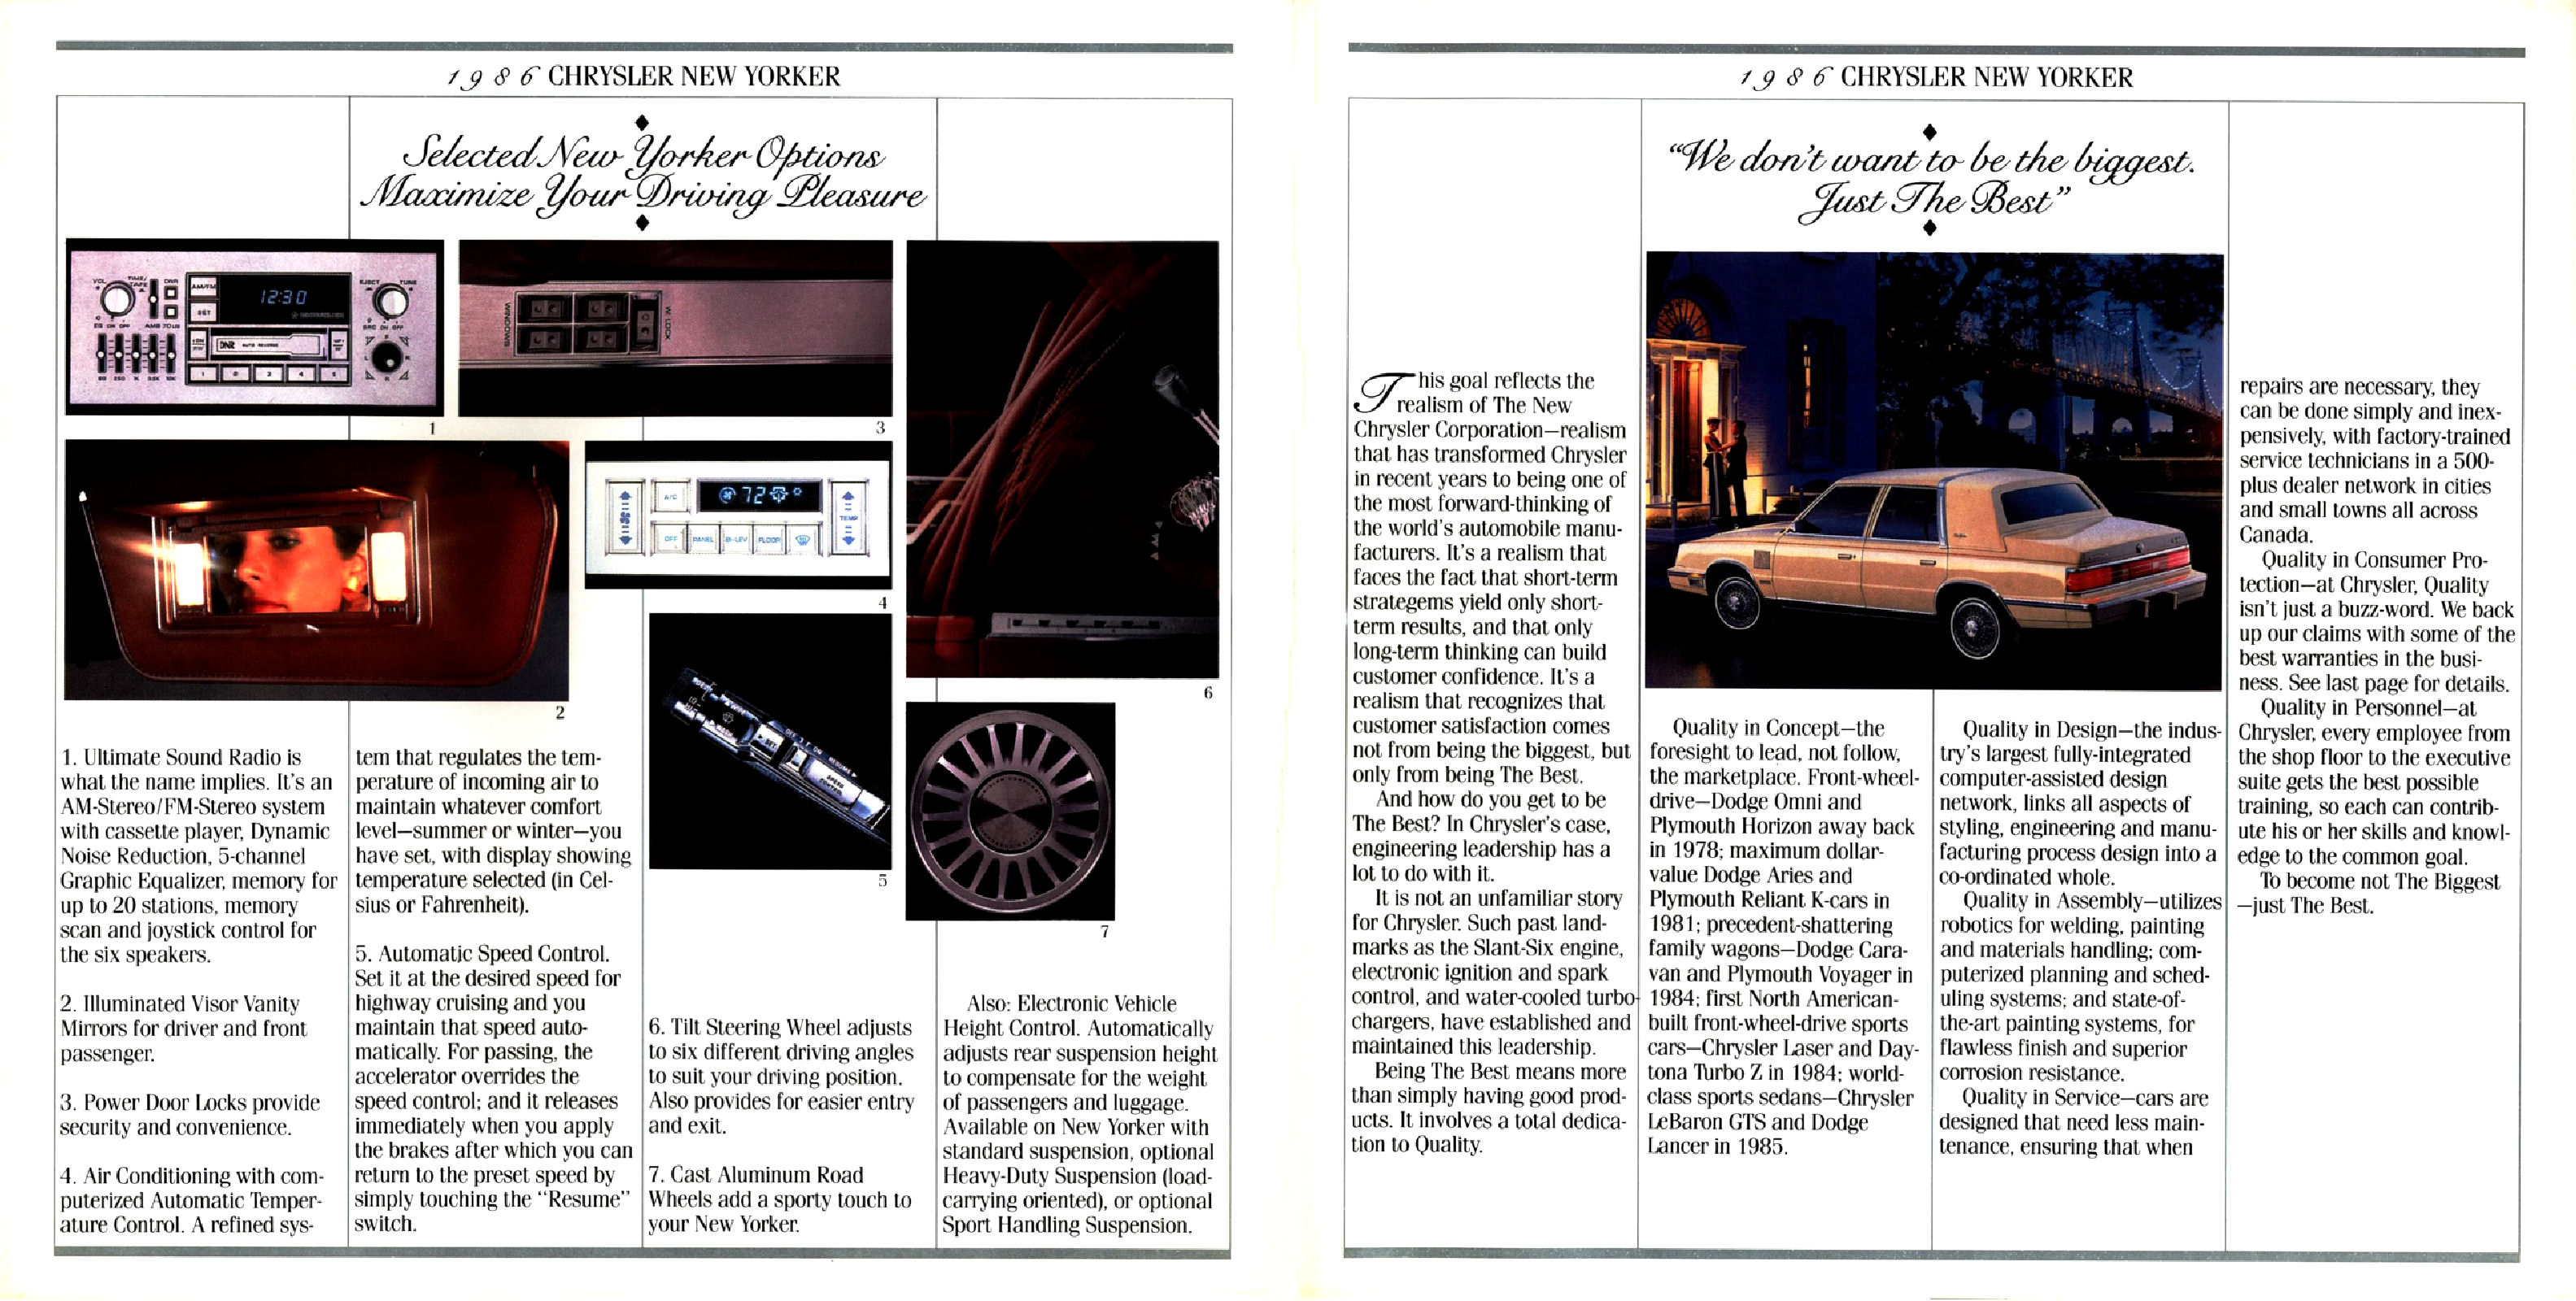 1986 Chrysler New Yorker (Cdn)-06-07